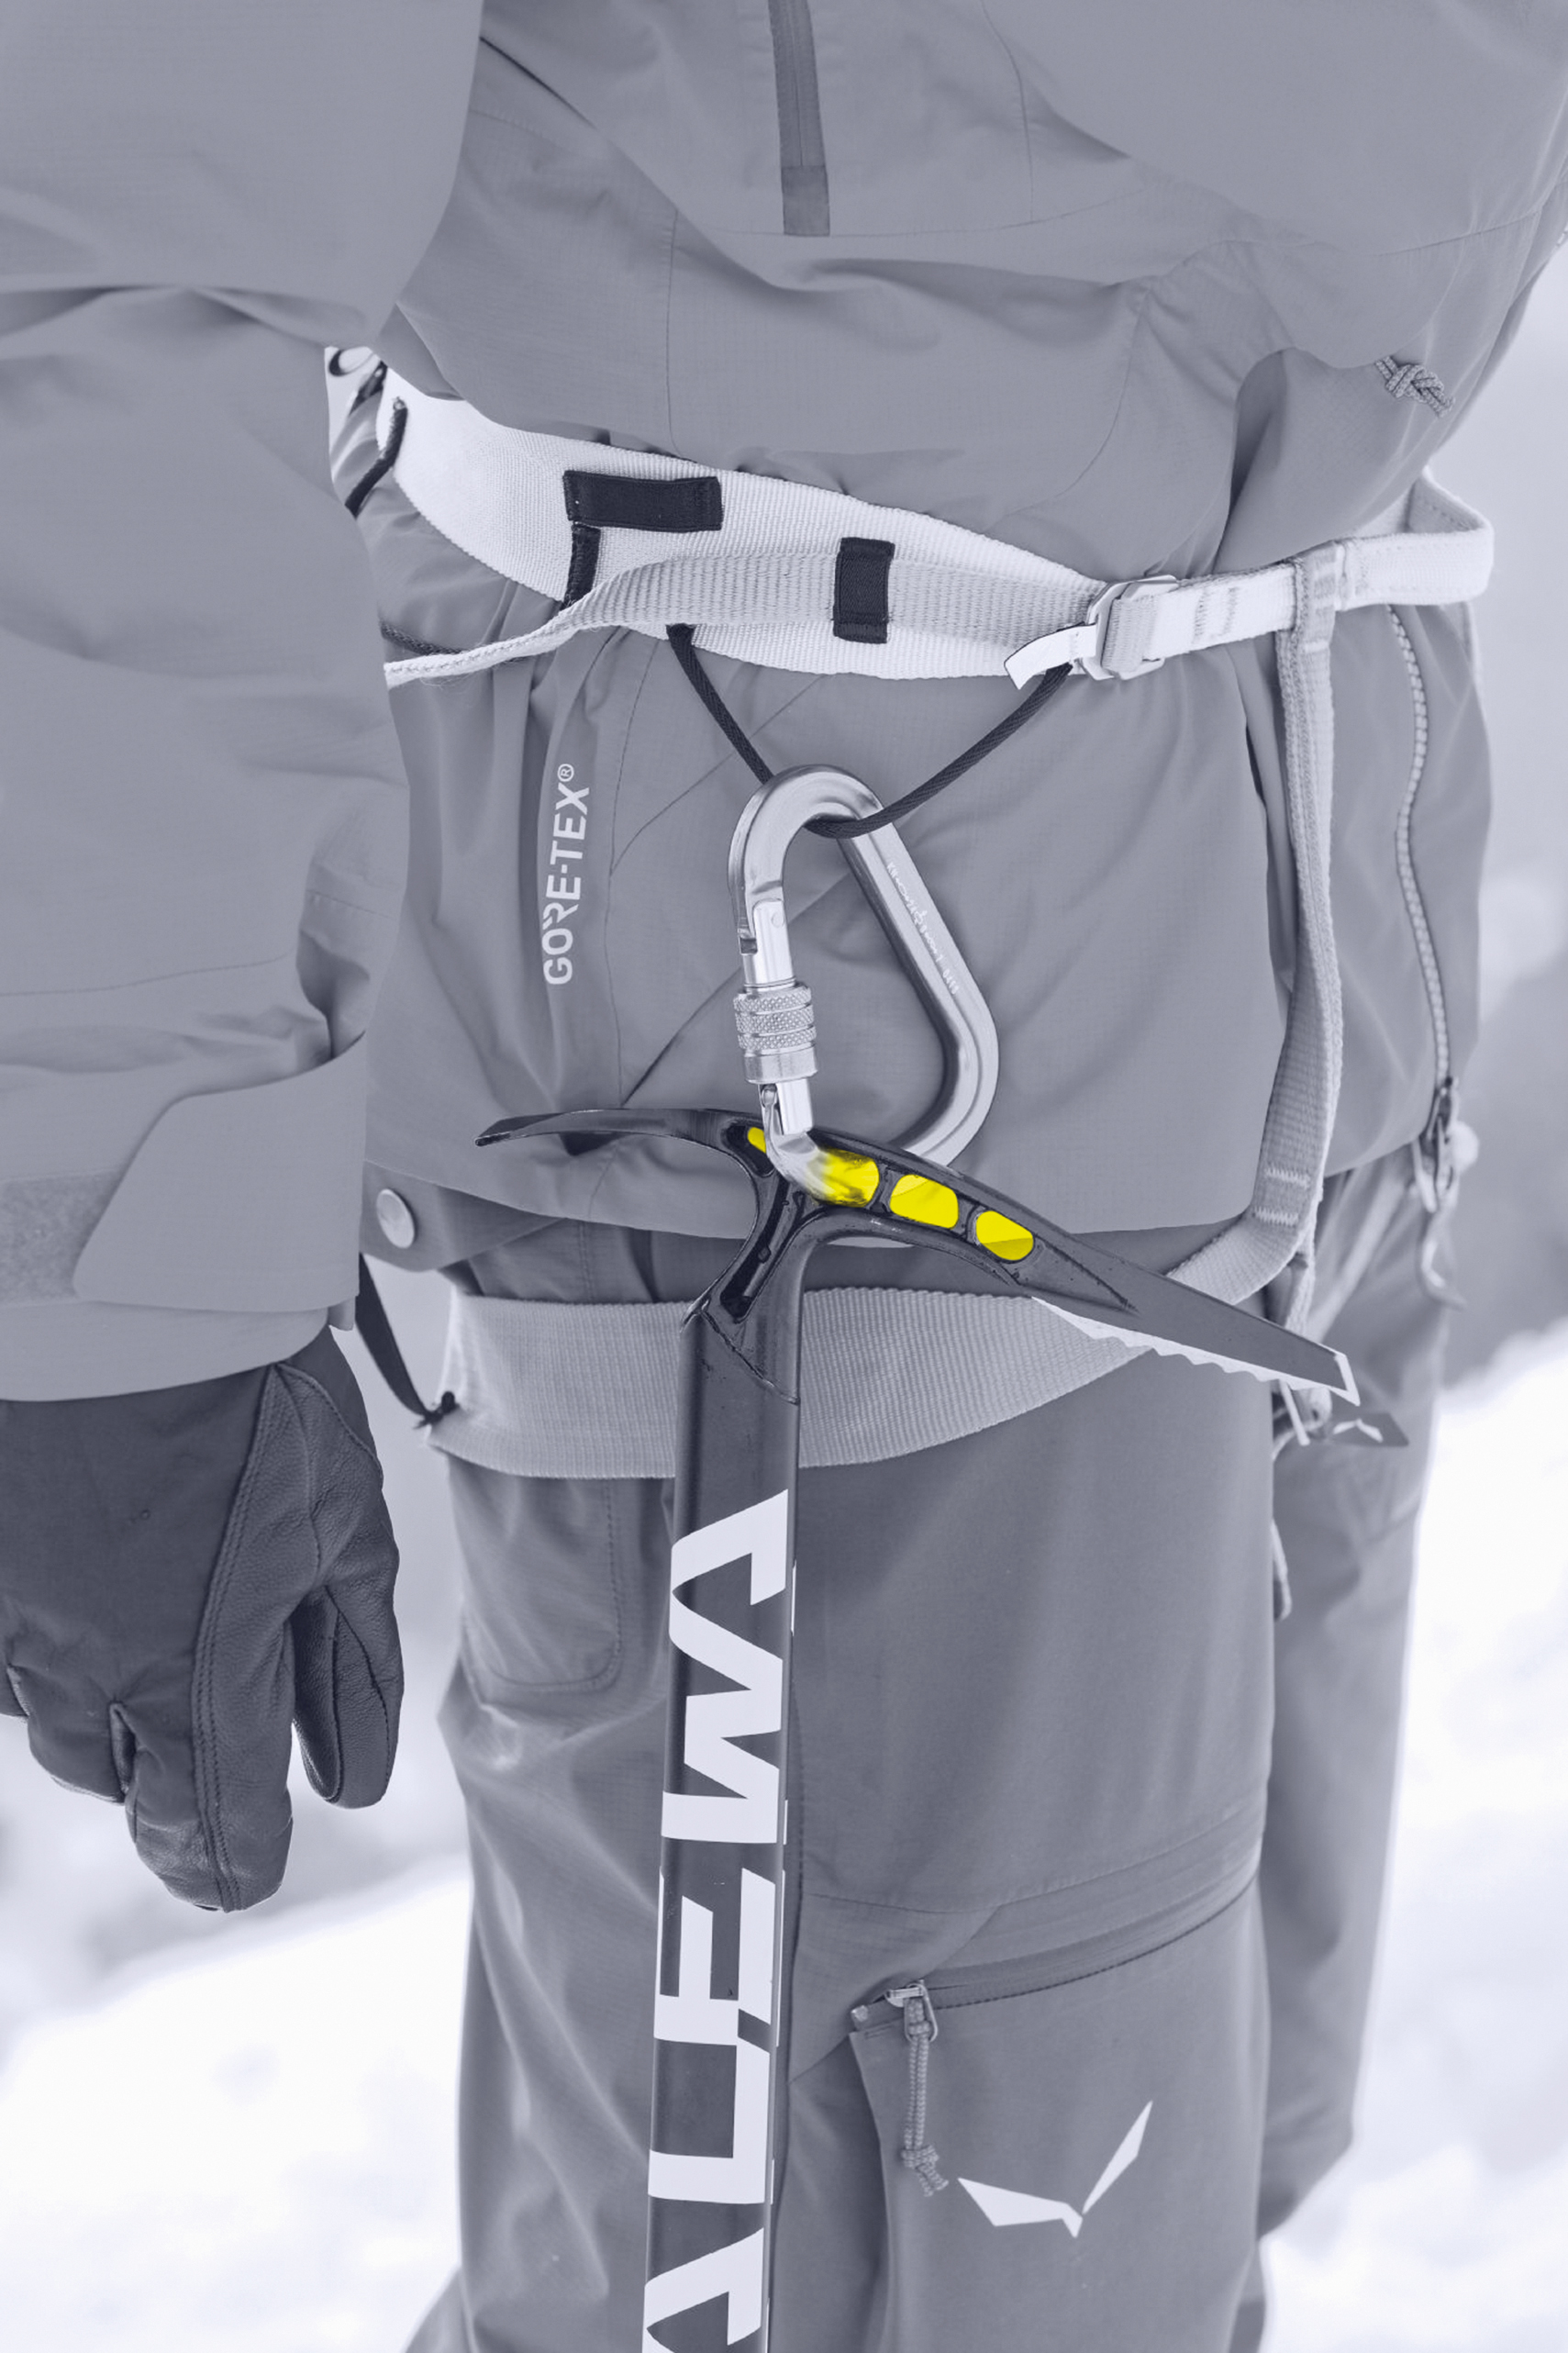 Salewa Alpine-X Ice Axe Ice Climbing Tool